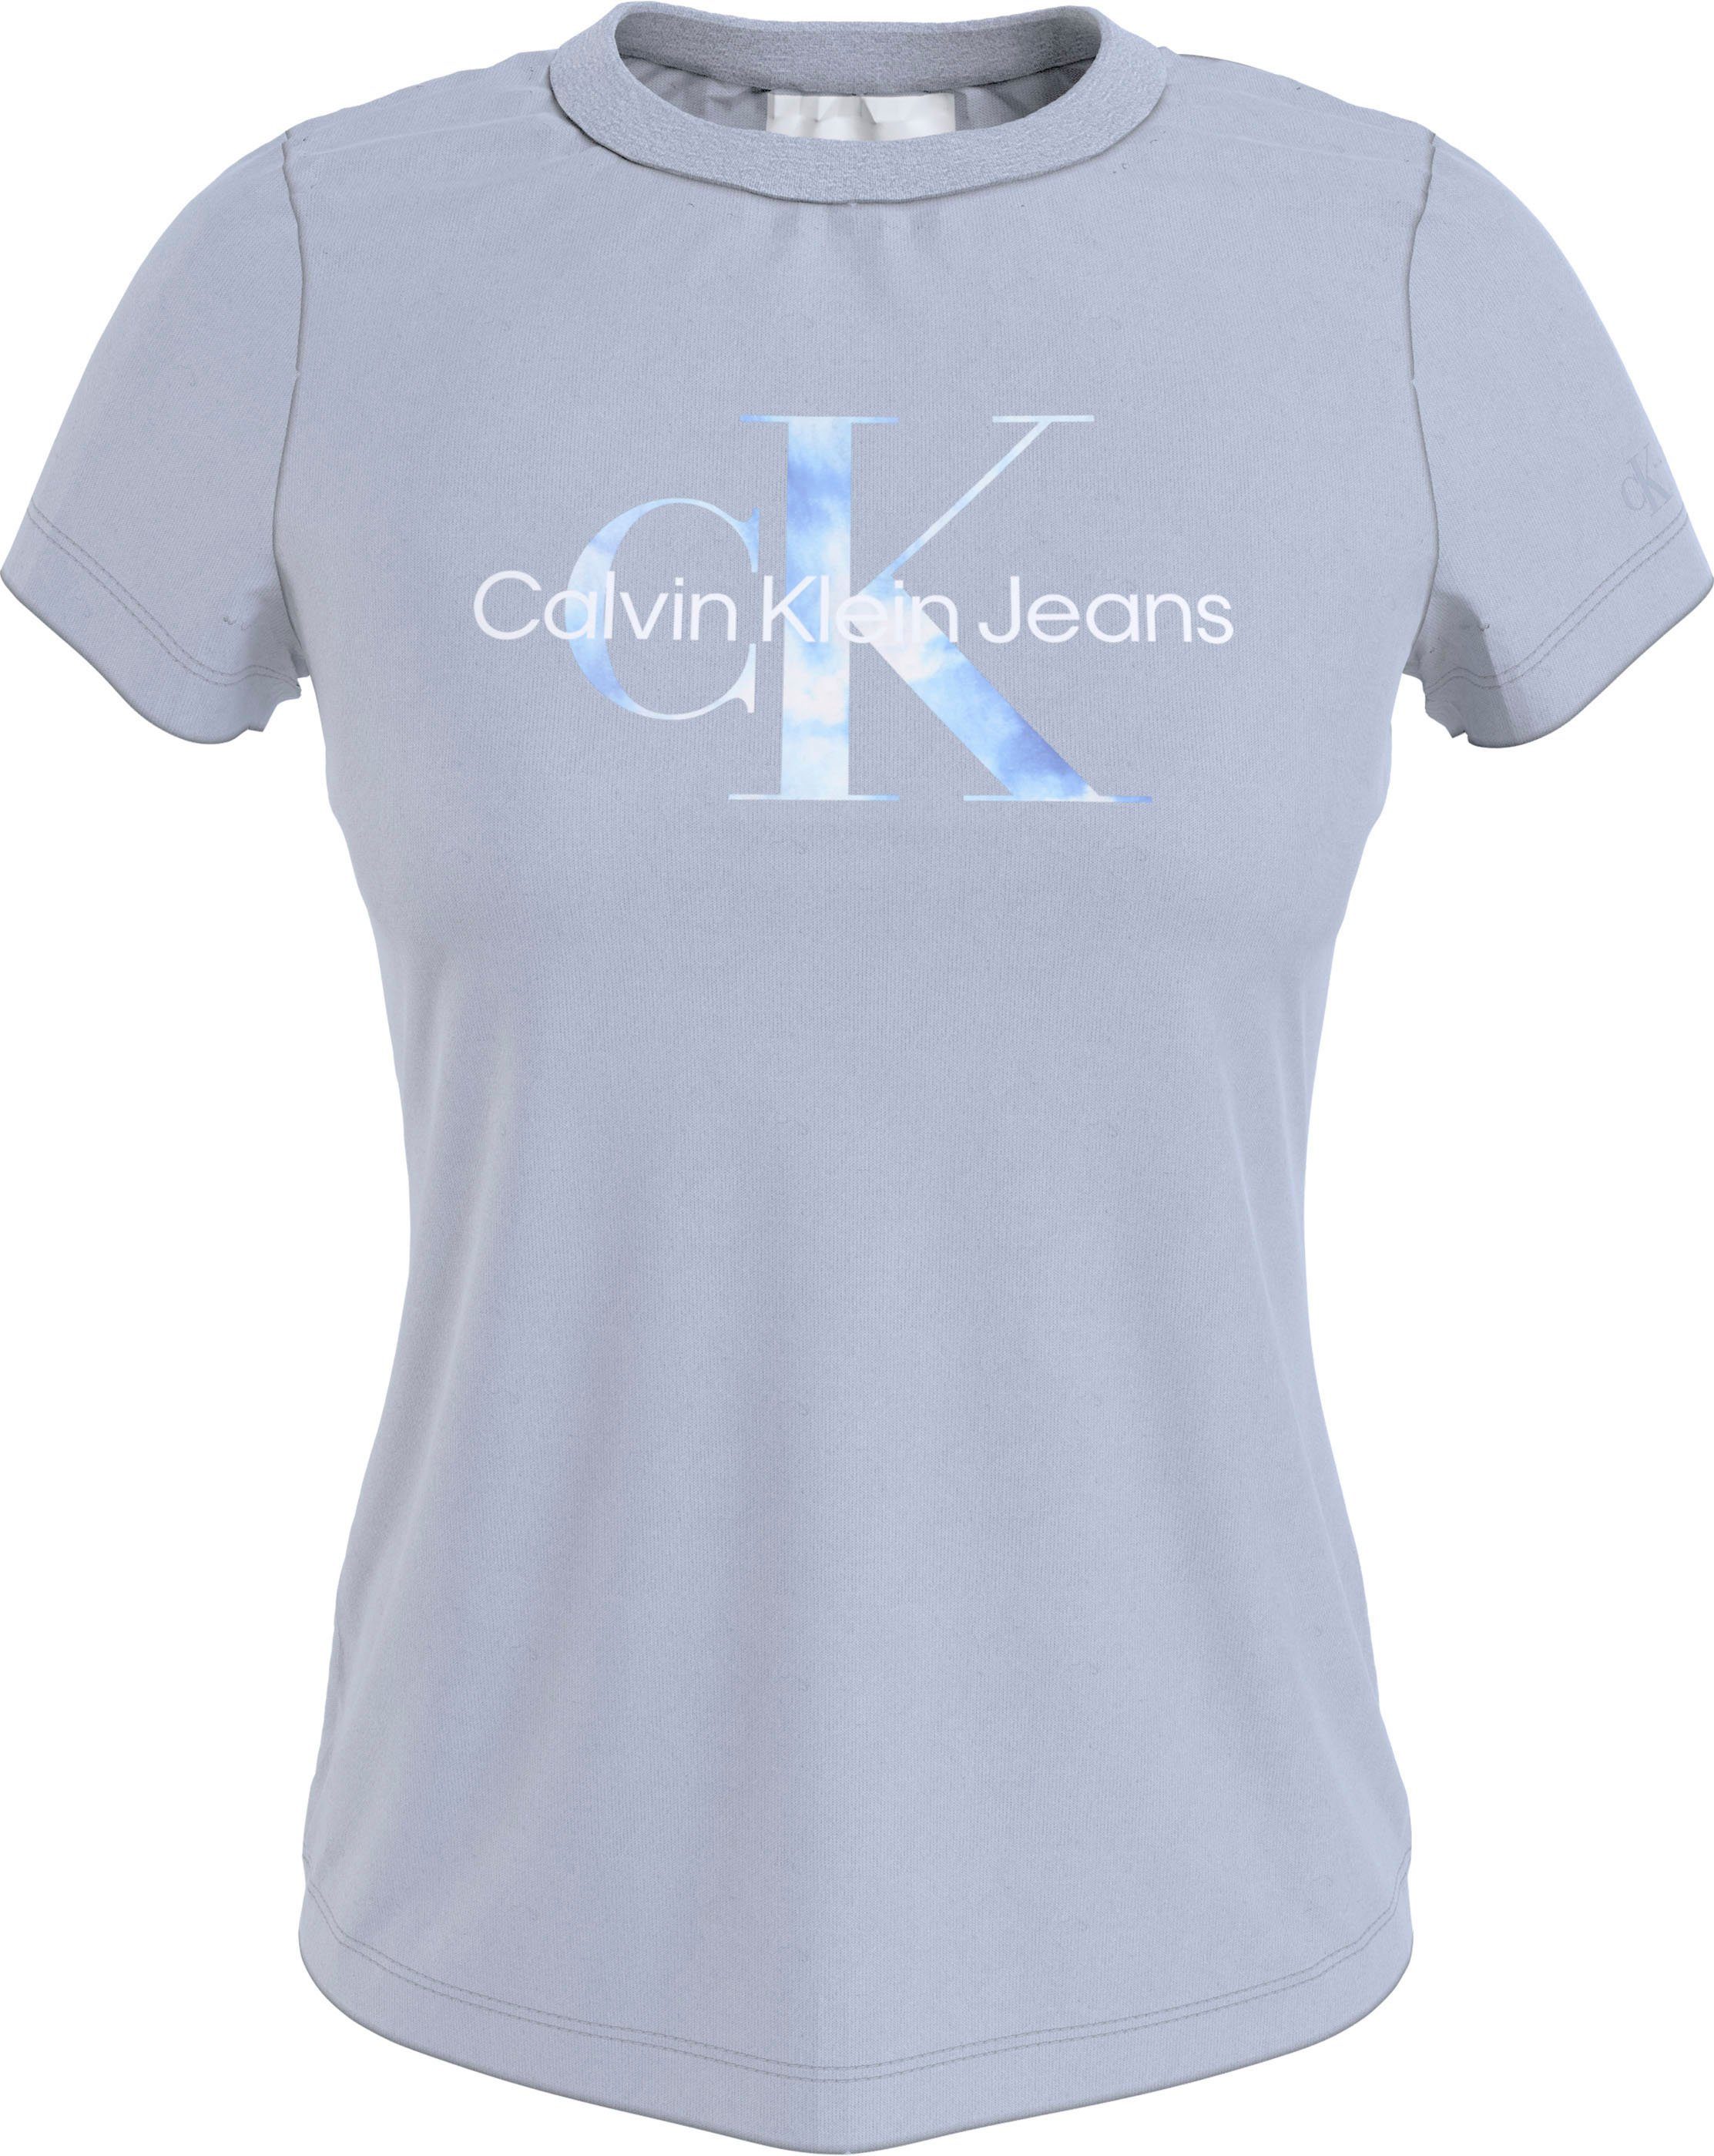 Damen Shirts Calvin Klein Jeans Rundhalsshirt AQUA MONOGRAM SLIM TEE mit markantem Calvin Klein Jeans Schriftzug